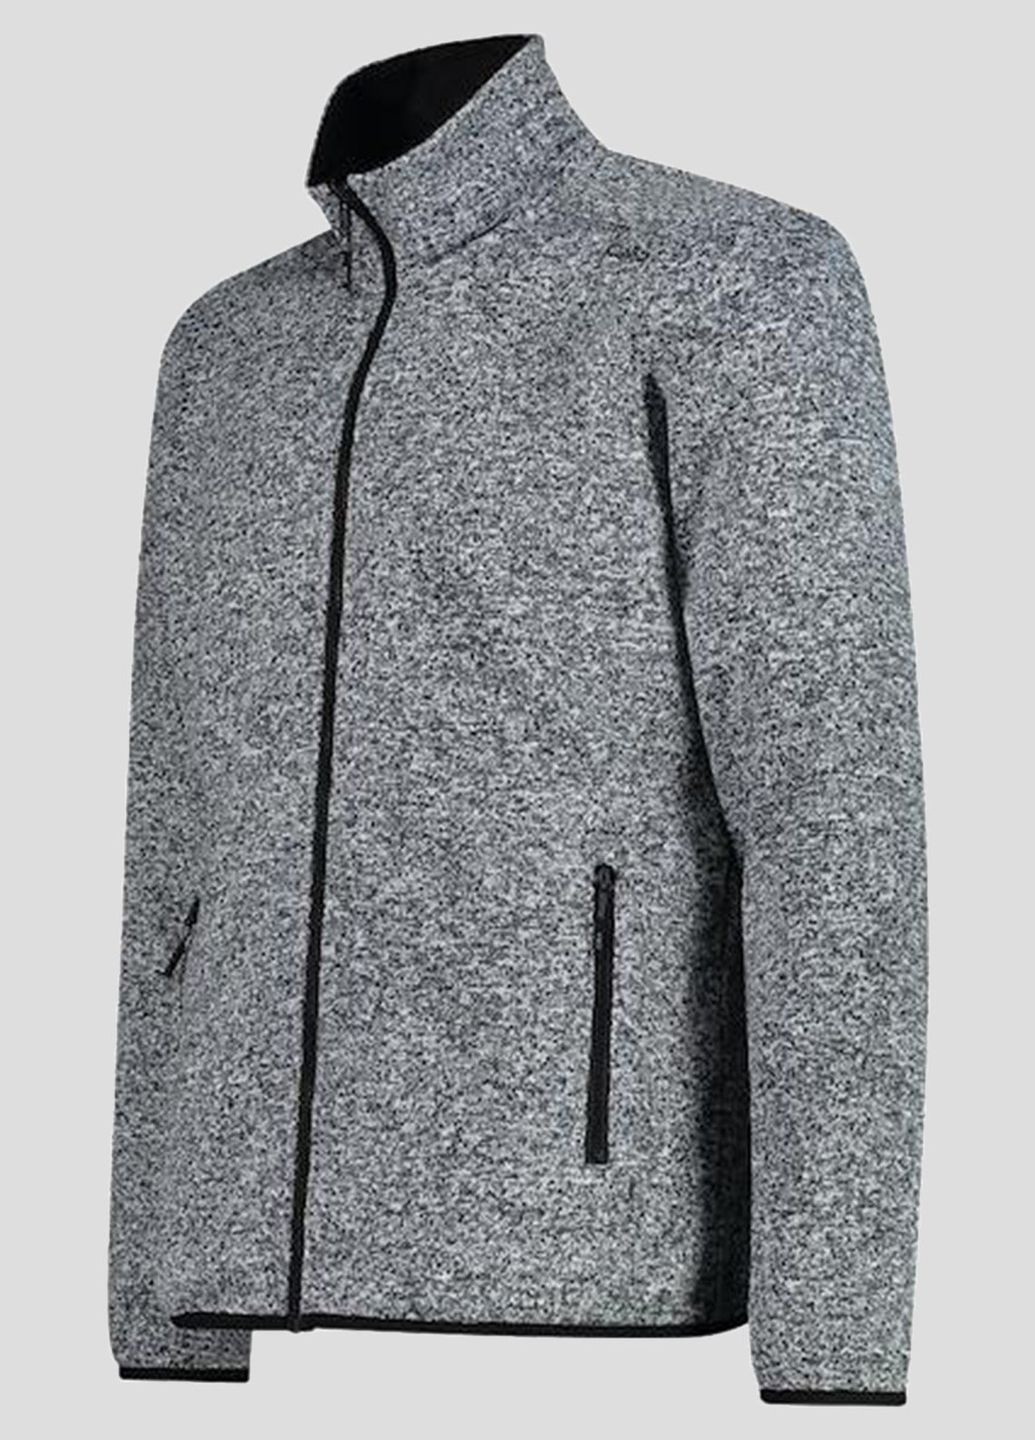 Черная демисезонная черная куртка 3 в 1 man jacket zip hood detachable CMP